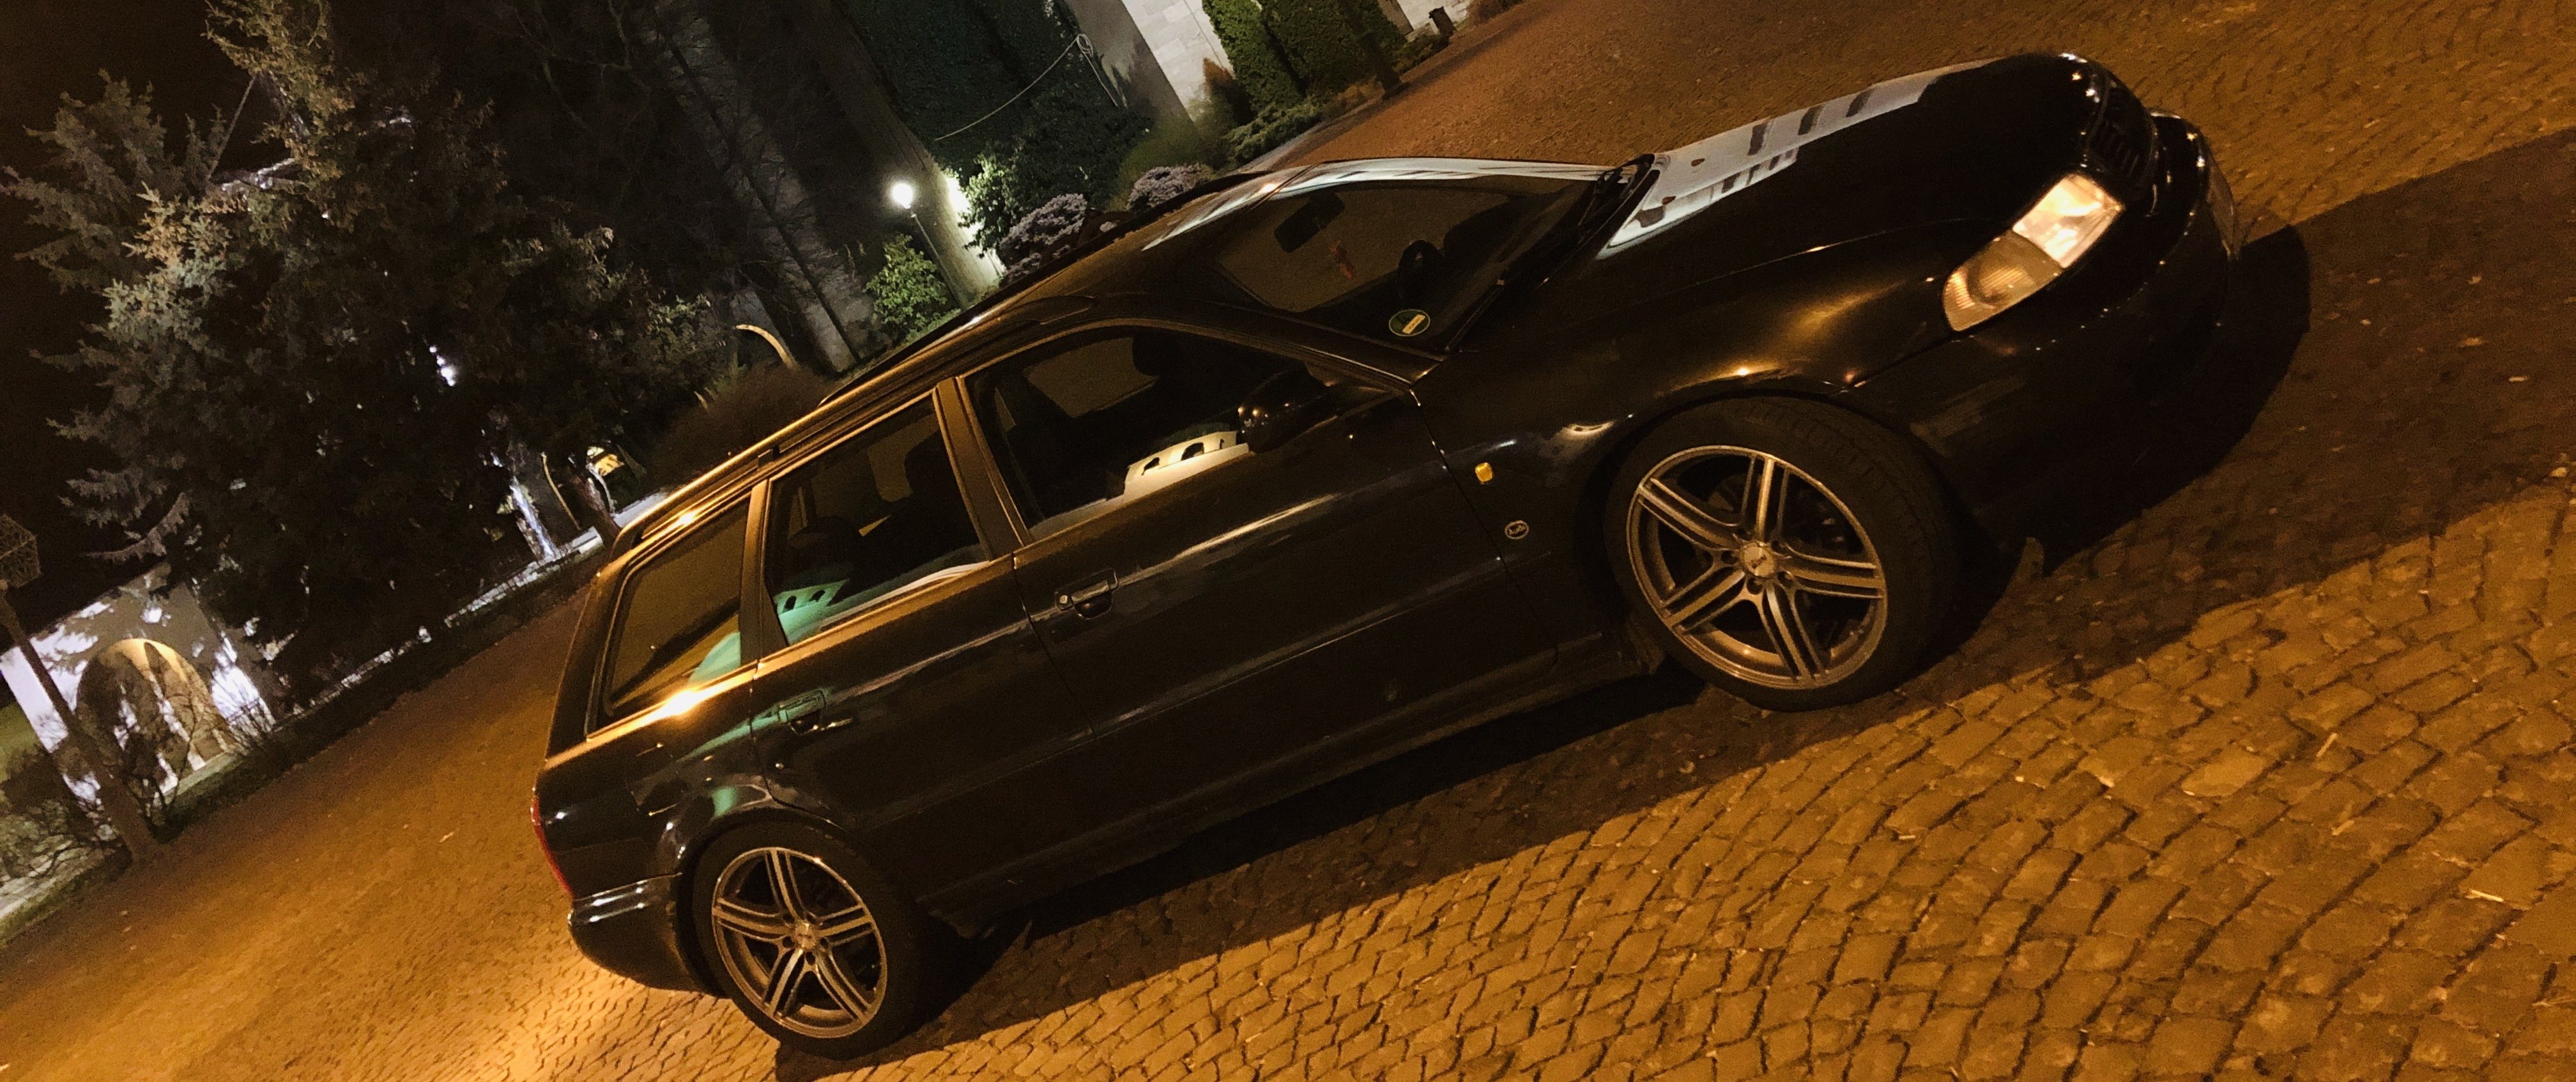 Audi – A4 – PLATIN – P85 – Silber – 18 Zoll